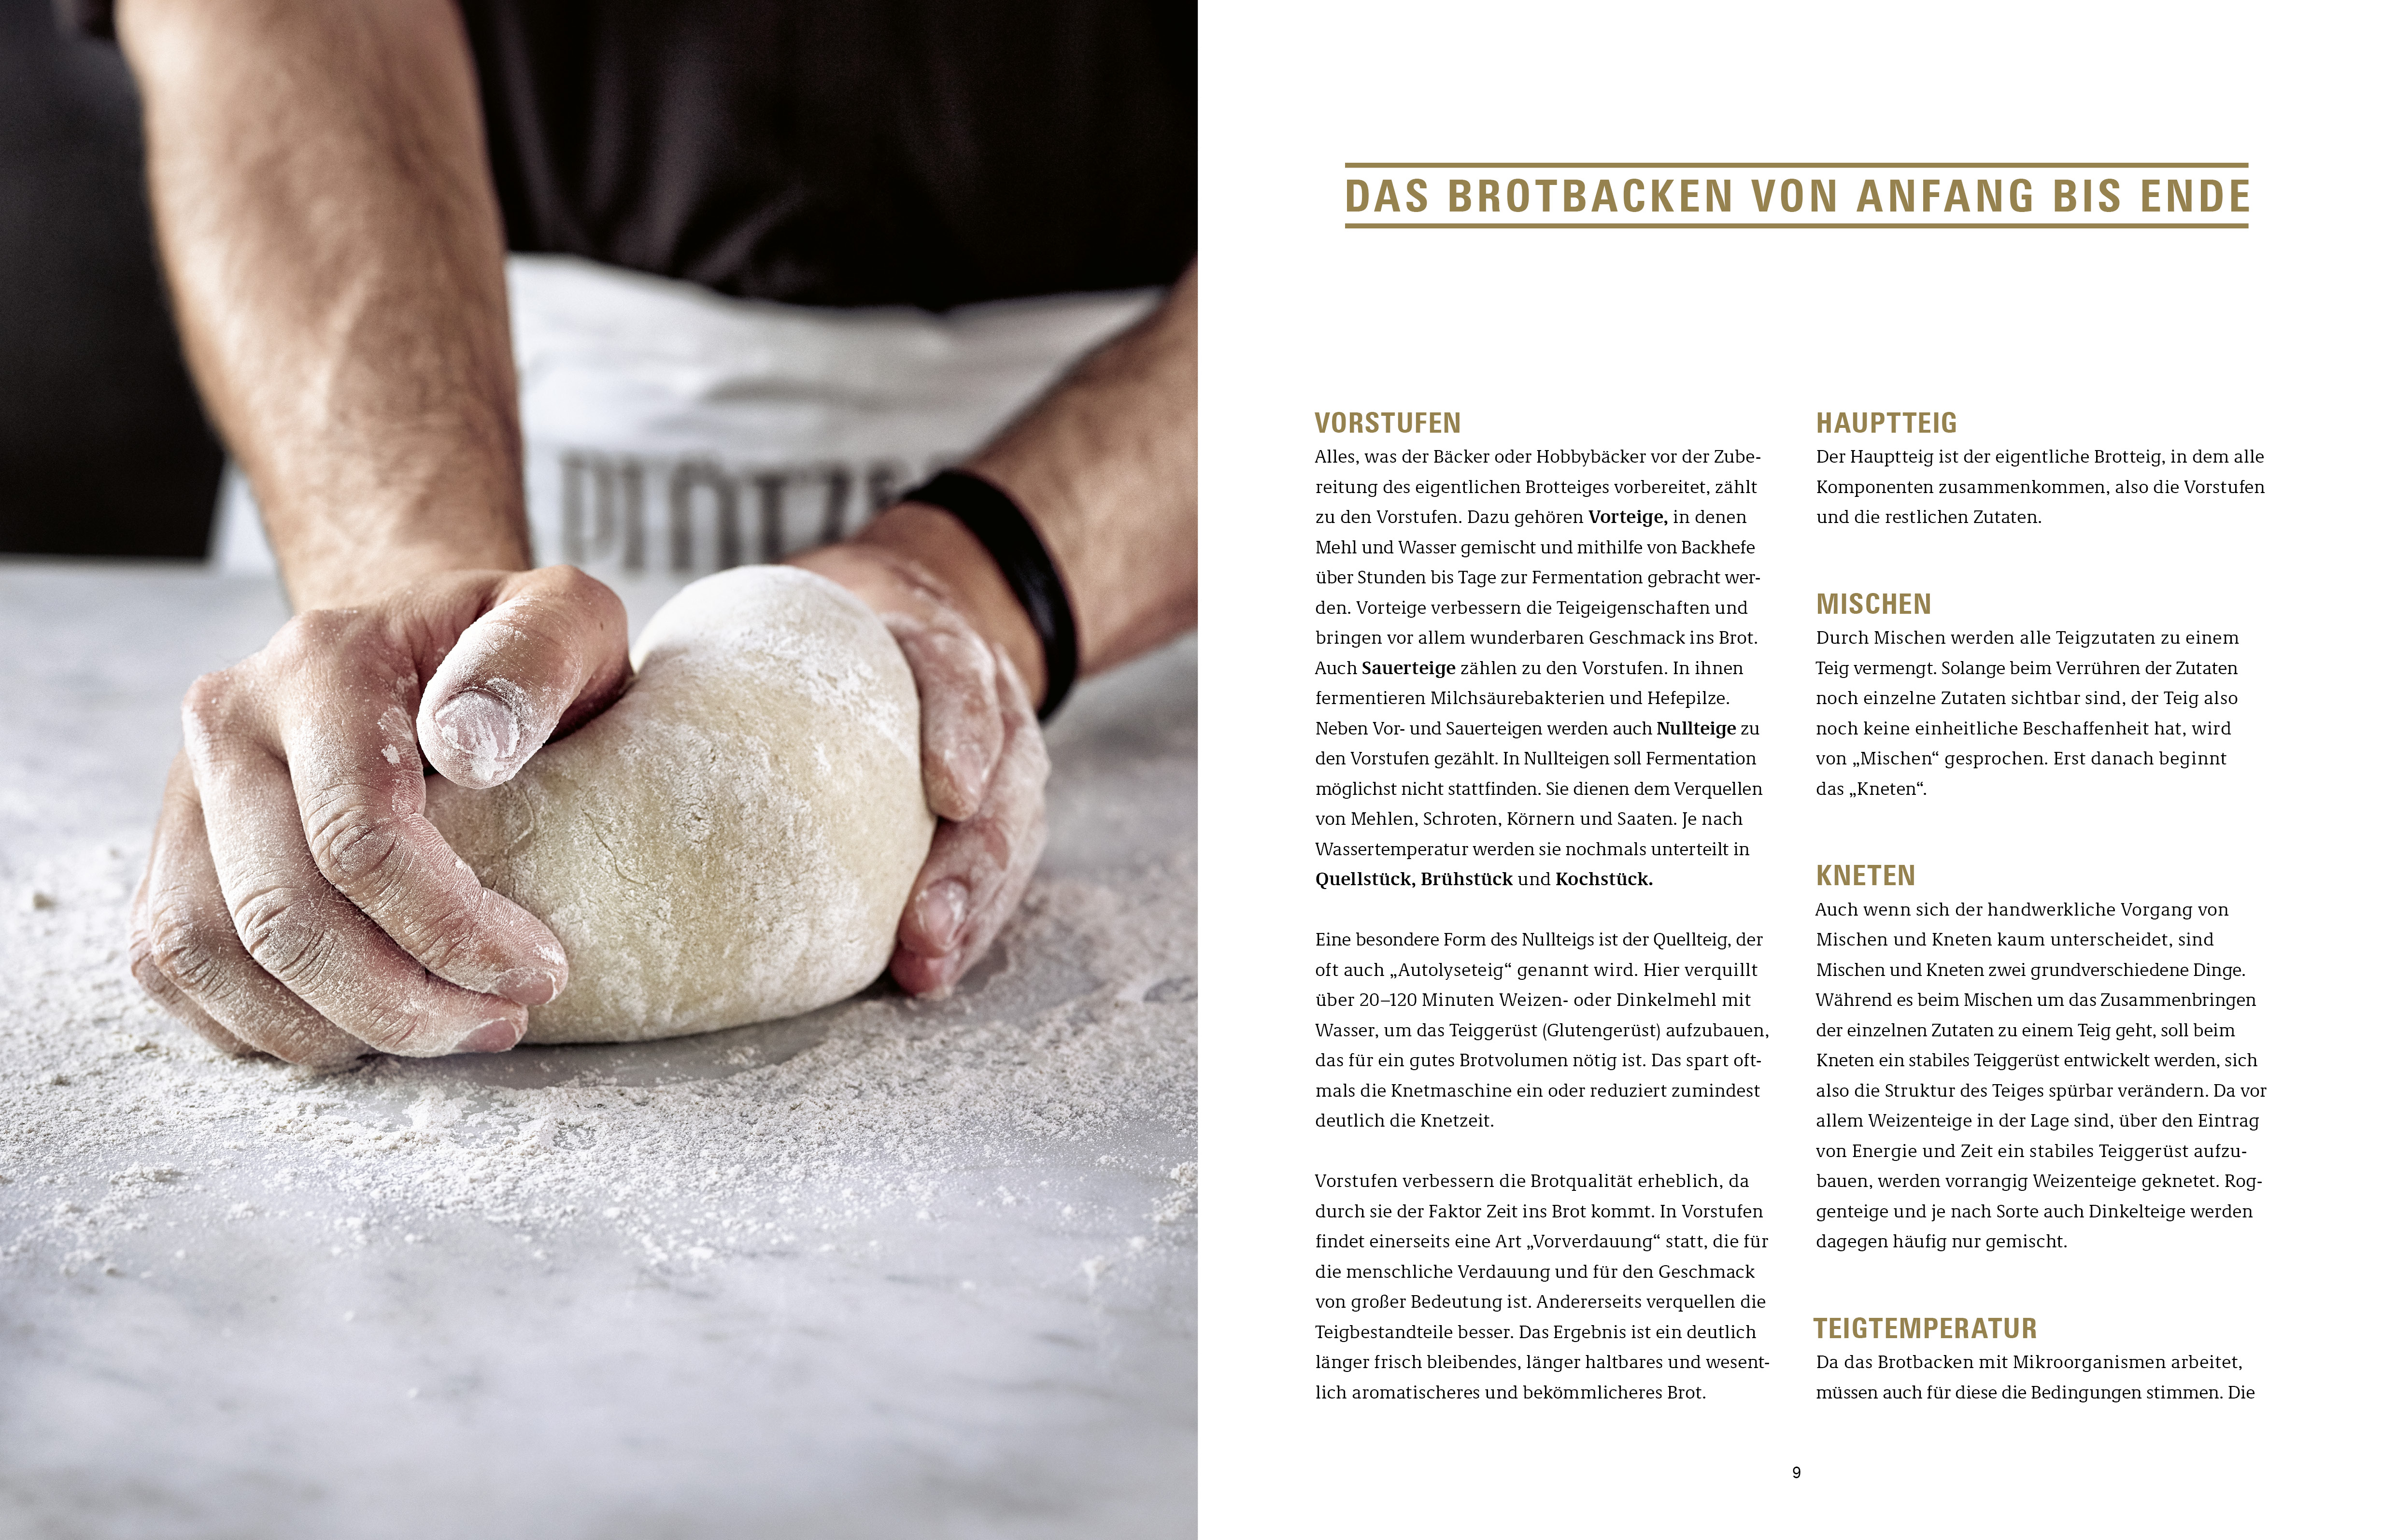 Krume und Kruste – Brot backen in Perfektion Schritt für Schritt: Rezepte, Tipps und Kniffe für mehr als 25 legendäre Brotrezepte